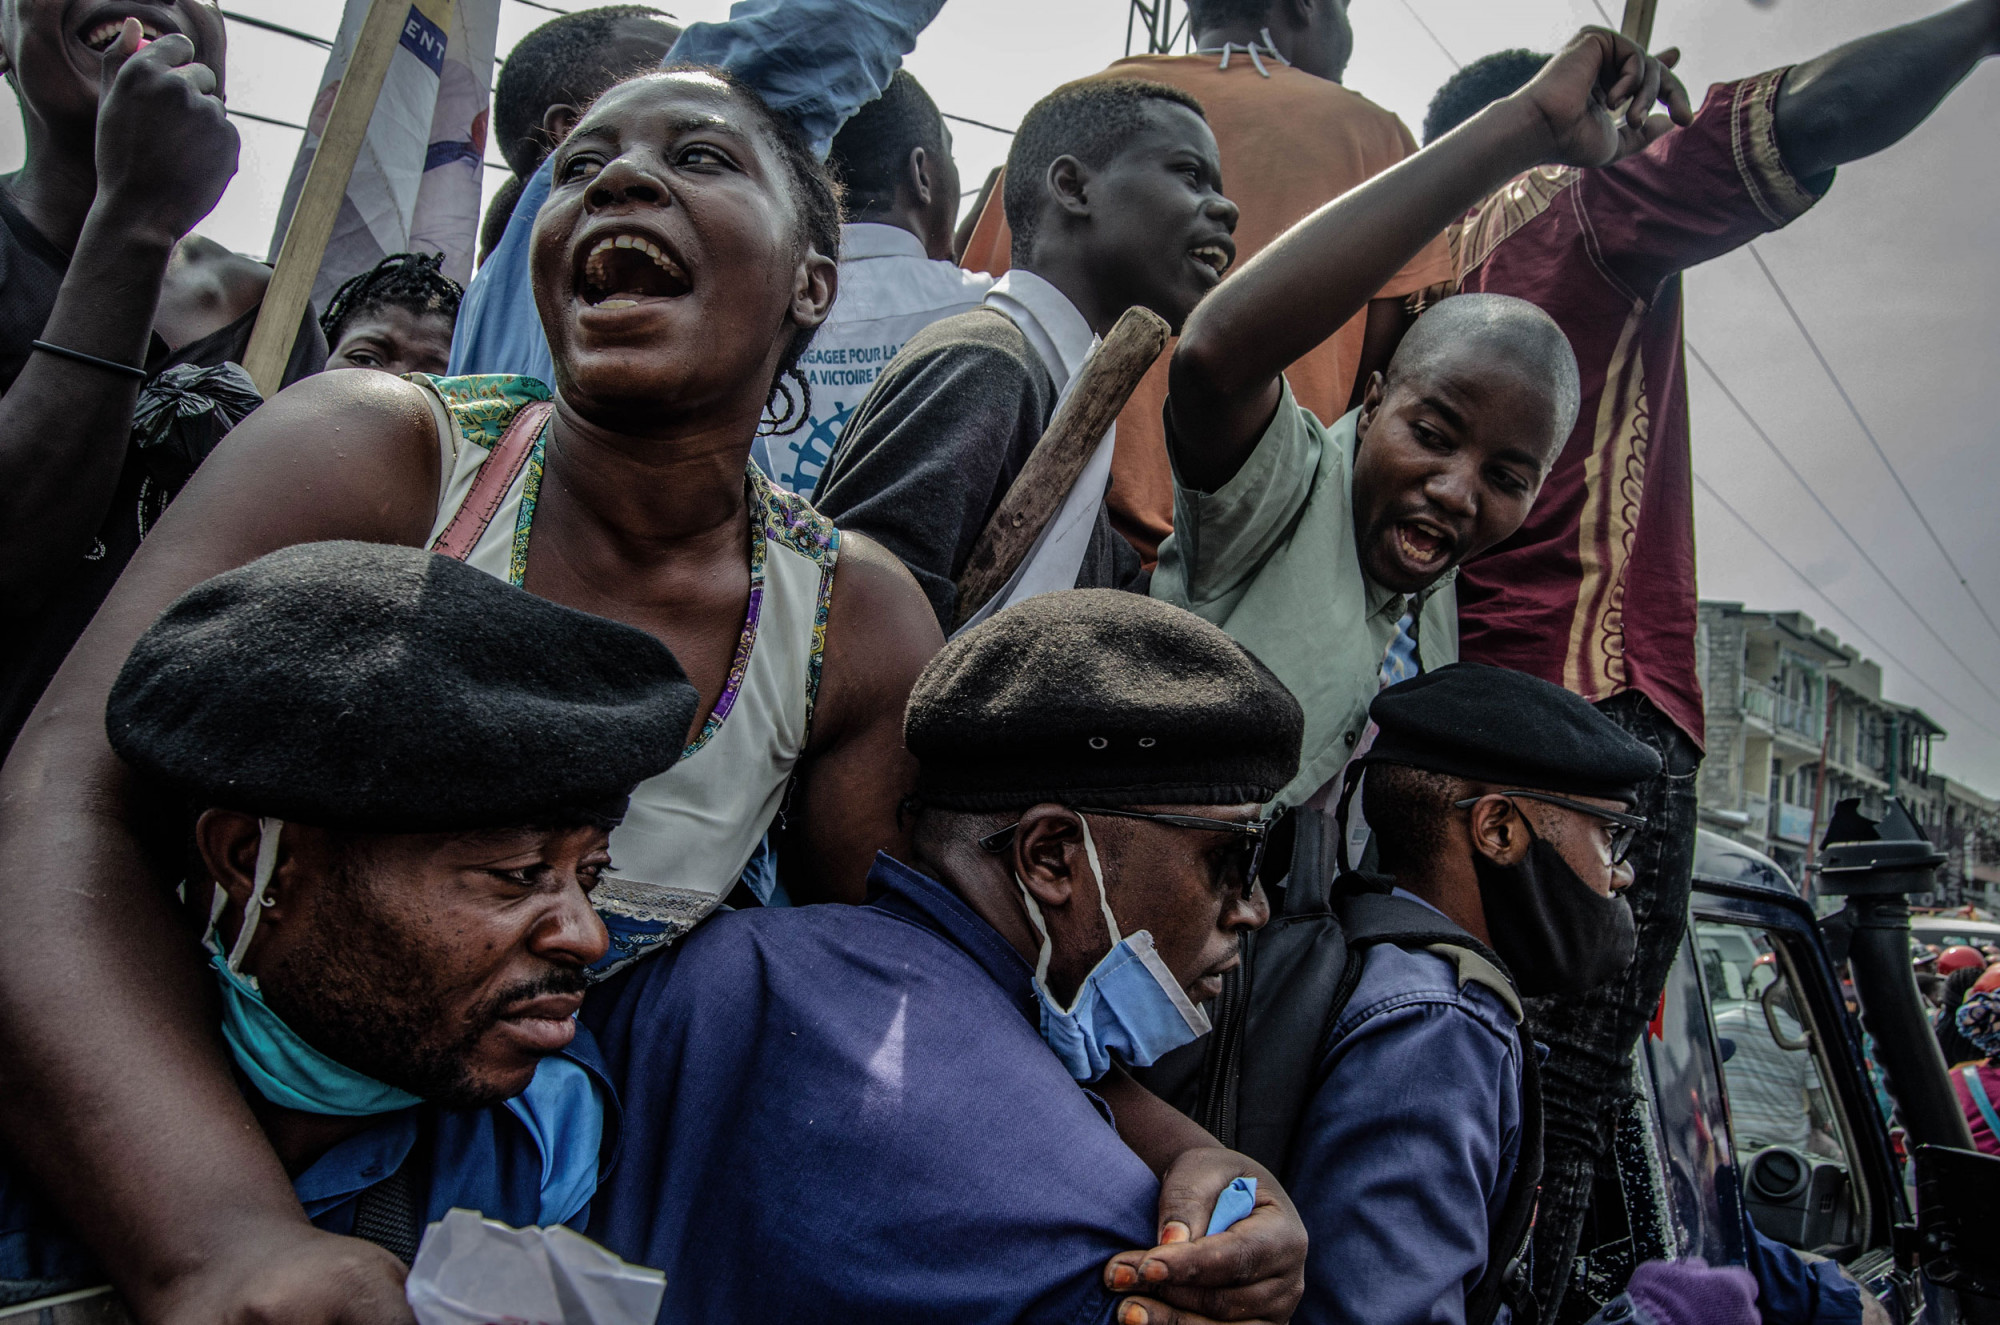 Goma, RDC, 8 juillet 2020. Arrêtés par la police, ces manifestants protestent contre la nomination à la tête de la commission électorale d’un homme accusé d’avoir manipulé des votes à l’avantage de l’ancien président Joseph Kabila. Les autorités congolaises sont critiquées pour avoir réprimé des détracteurs pacifiques, des journalistes et des membres de partis d’opposition, en utilisant le prétexte de l’état d’urgence pandémique pour étouffer les protestations politiques. © Moses Sawasawa pour la Fondation Carmignac 